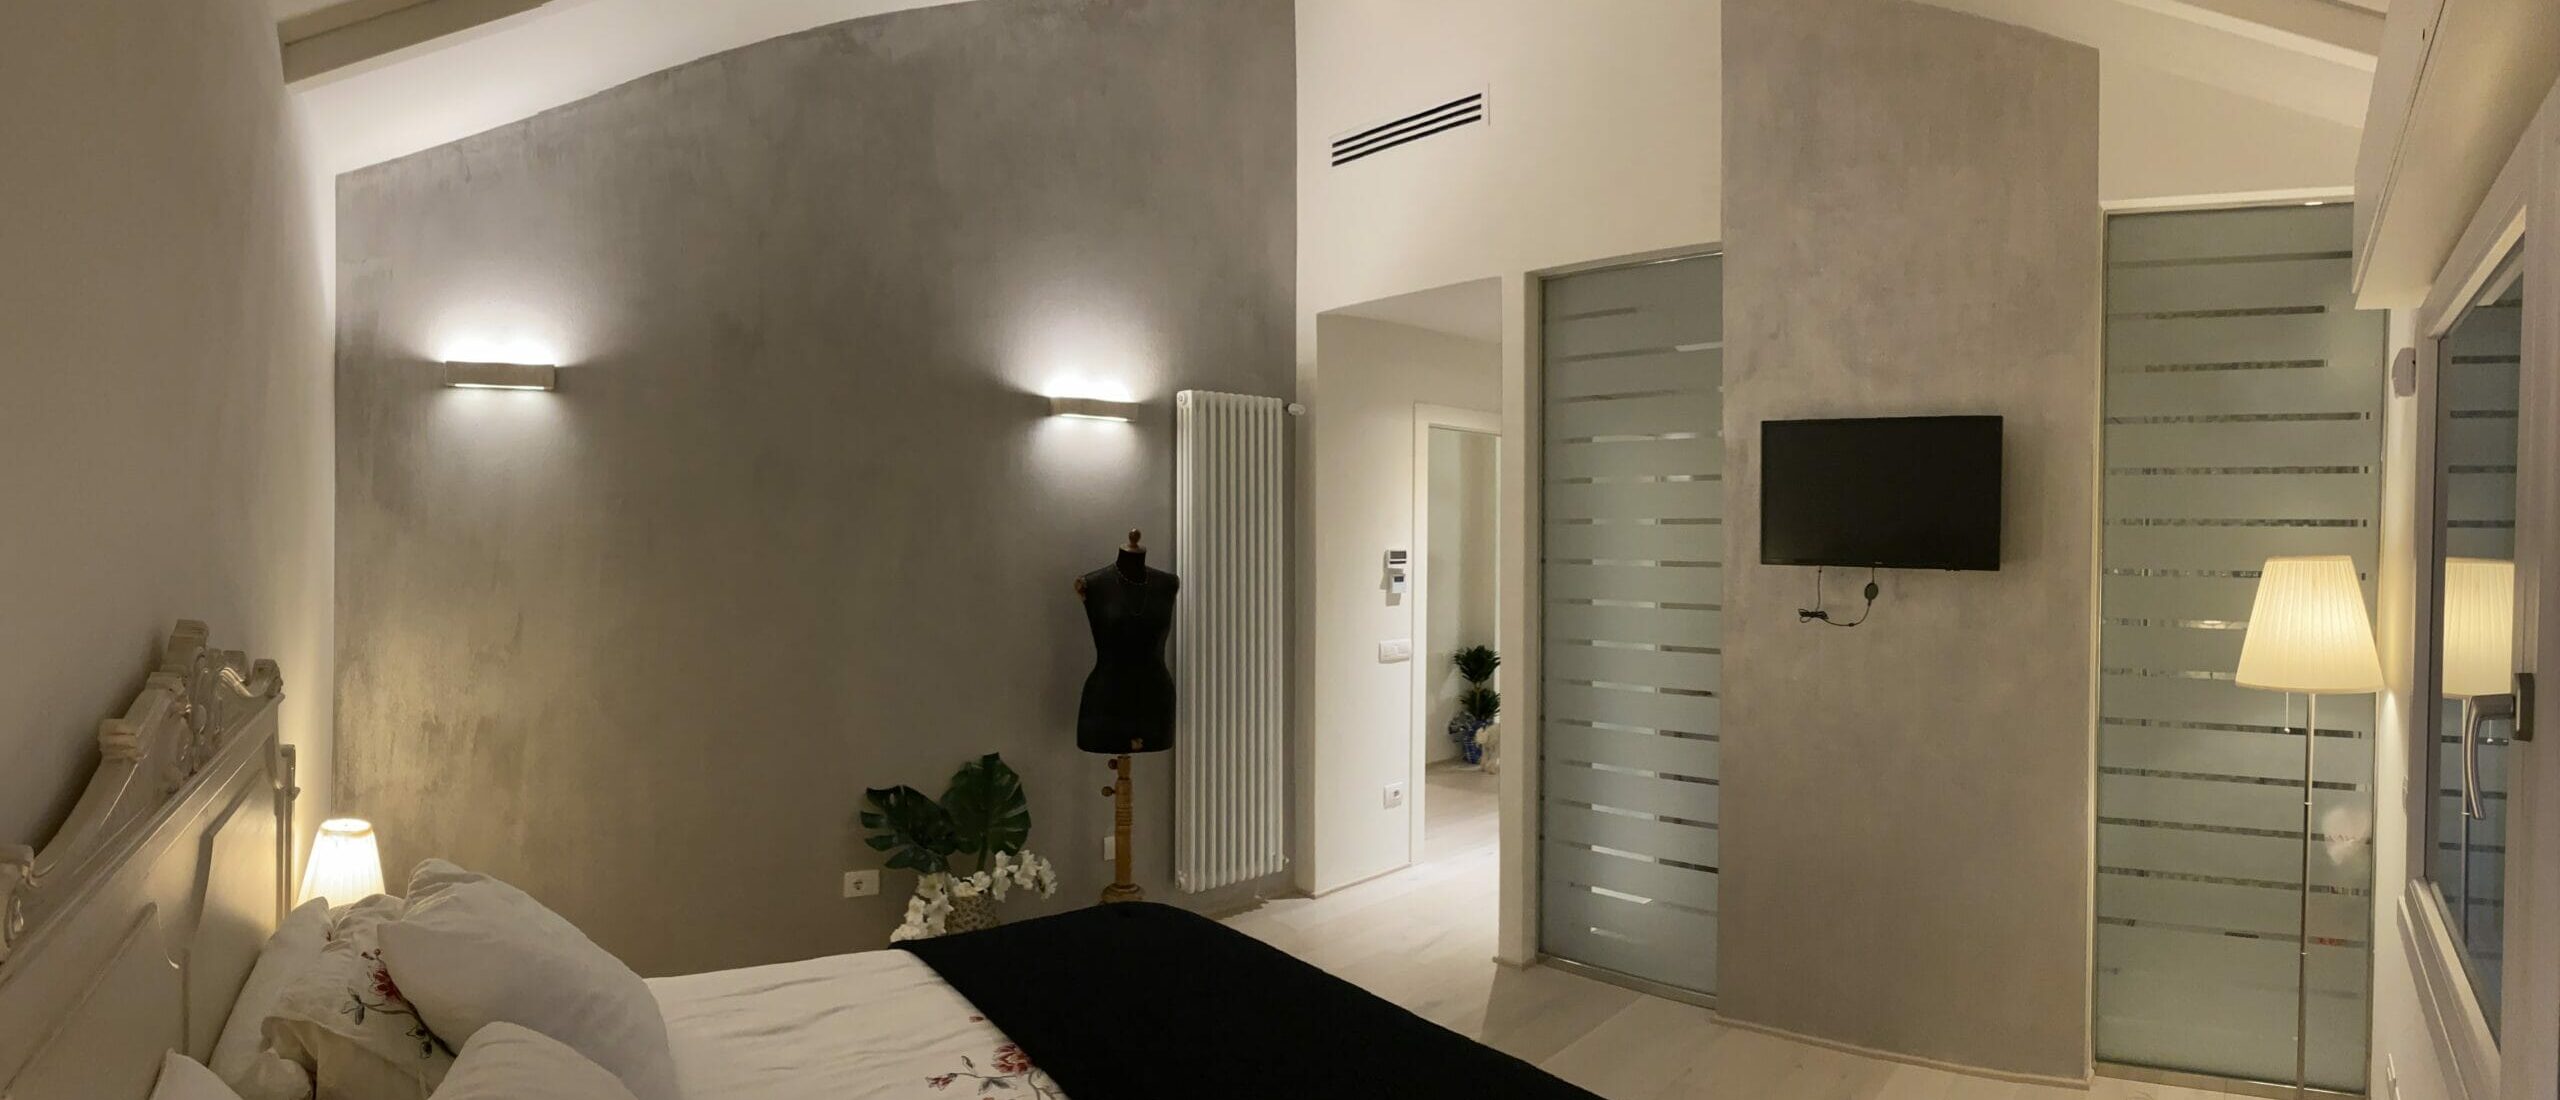 camera da letto super moderna in mansarda a viareggio. design da studio tecnico dalle luche